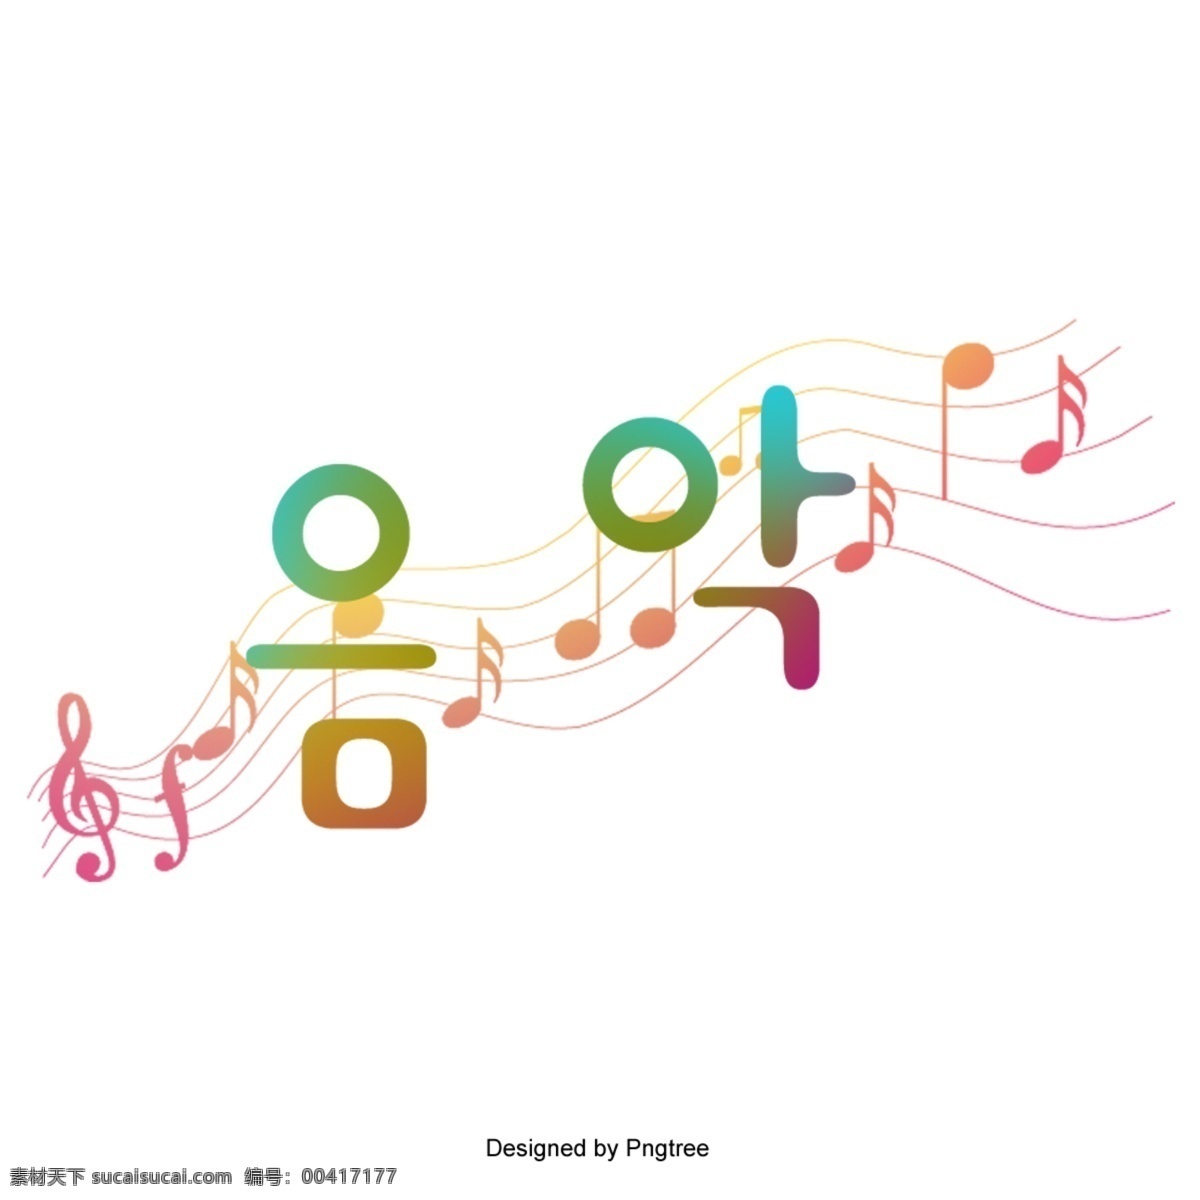 韩国音乐 人物 背景 韩国字体 音乐 音乐符号 头戴耳机 图标 商标 徽标 模式 油画 水彩画 绘画 插图 剪辑 分子 美女 简单